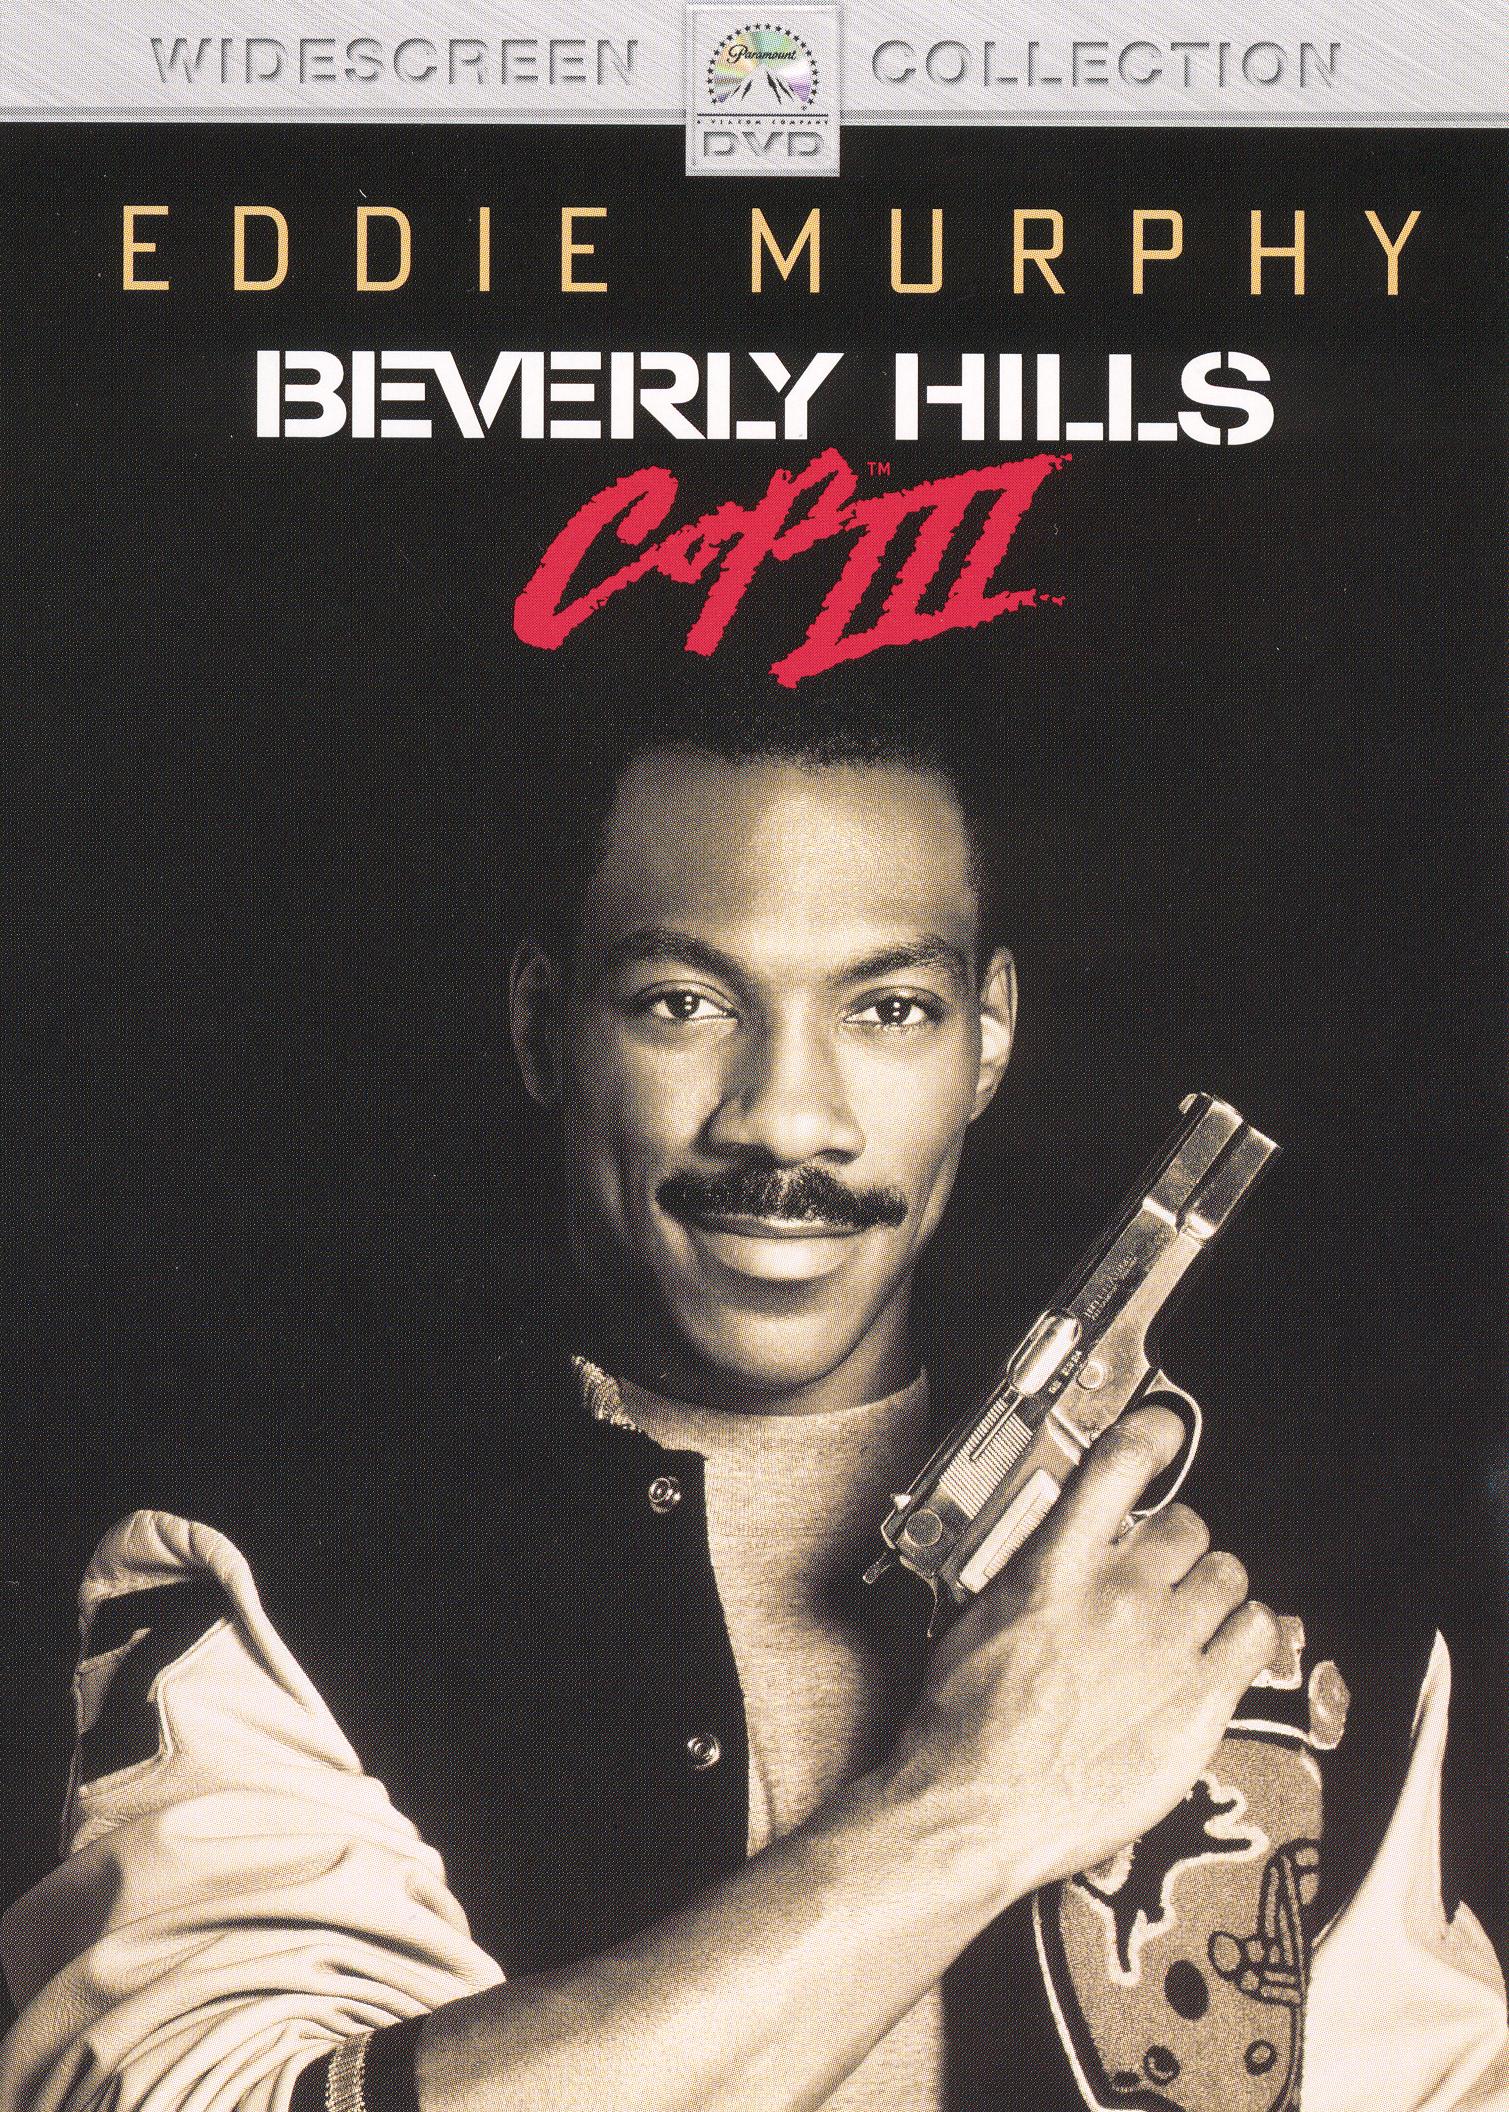 Beverly Hills Cop III cover art